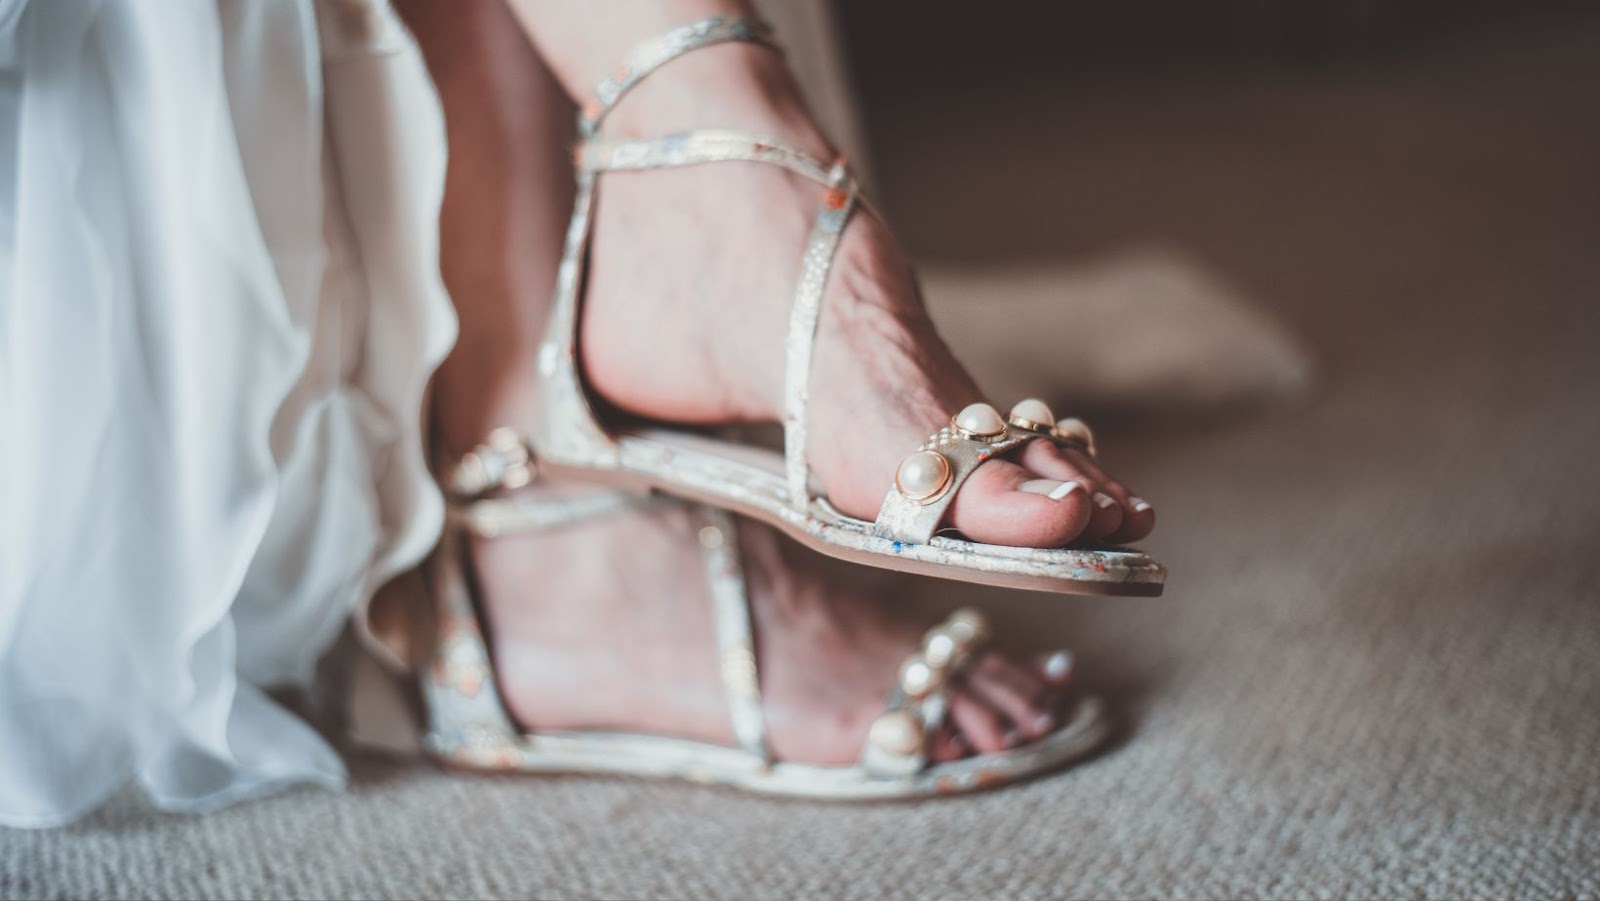 The debate between sandals and flip flops